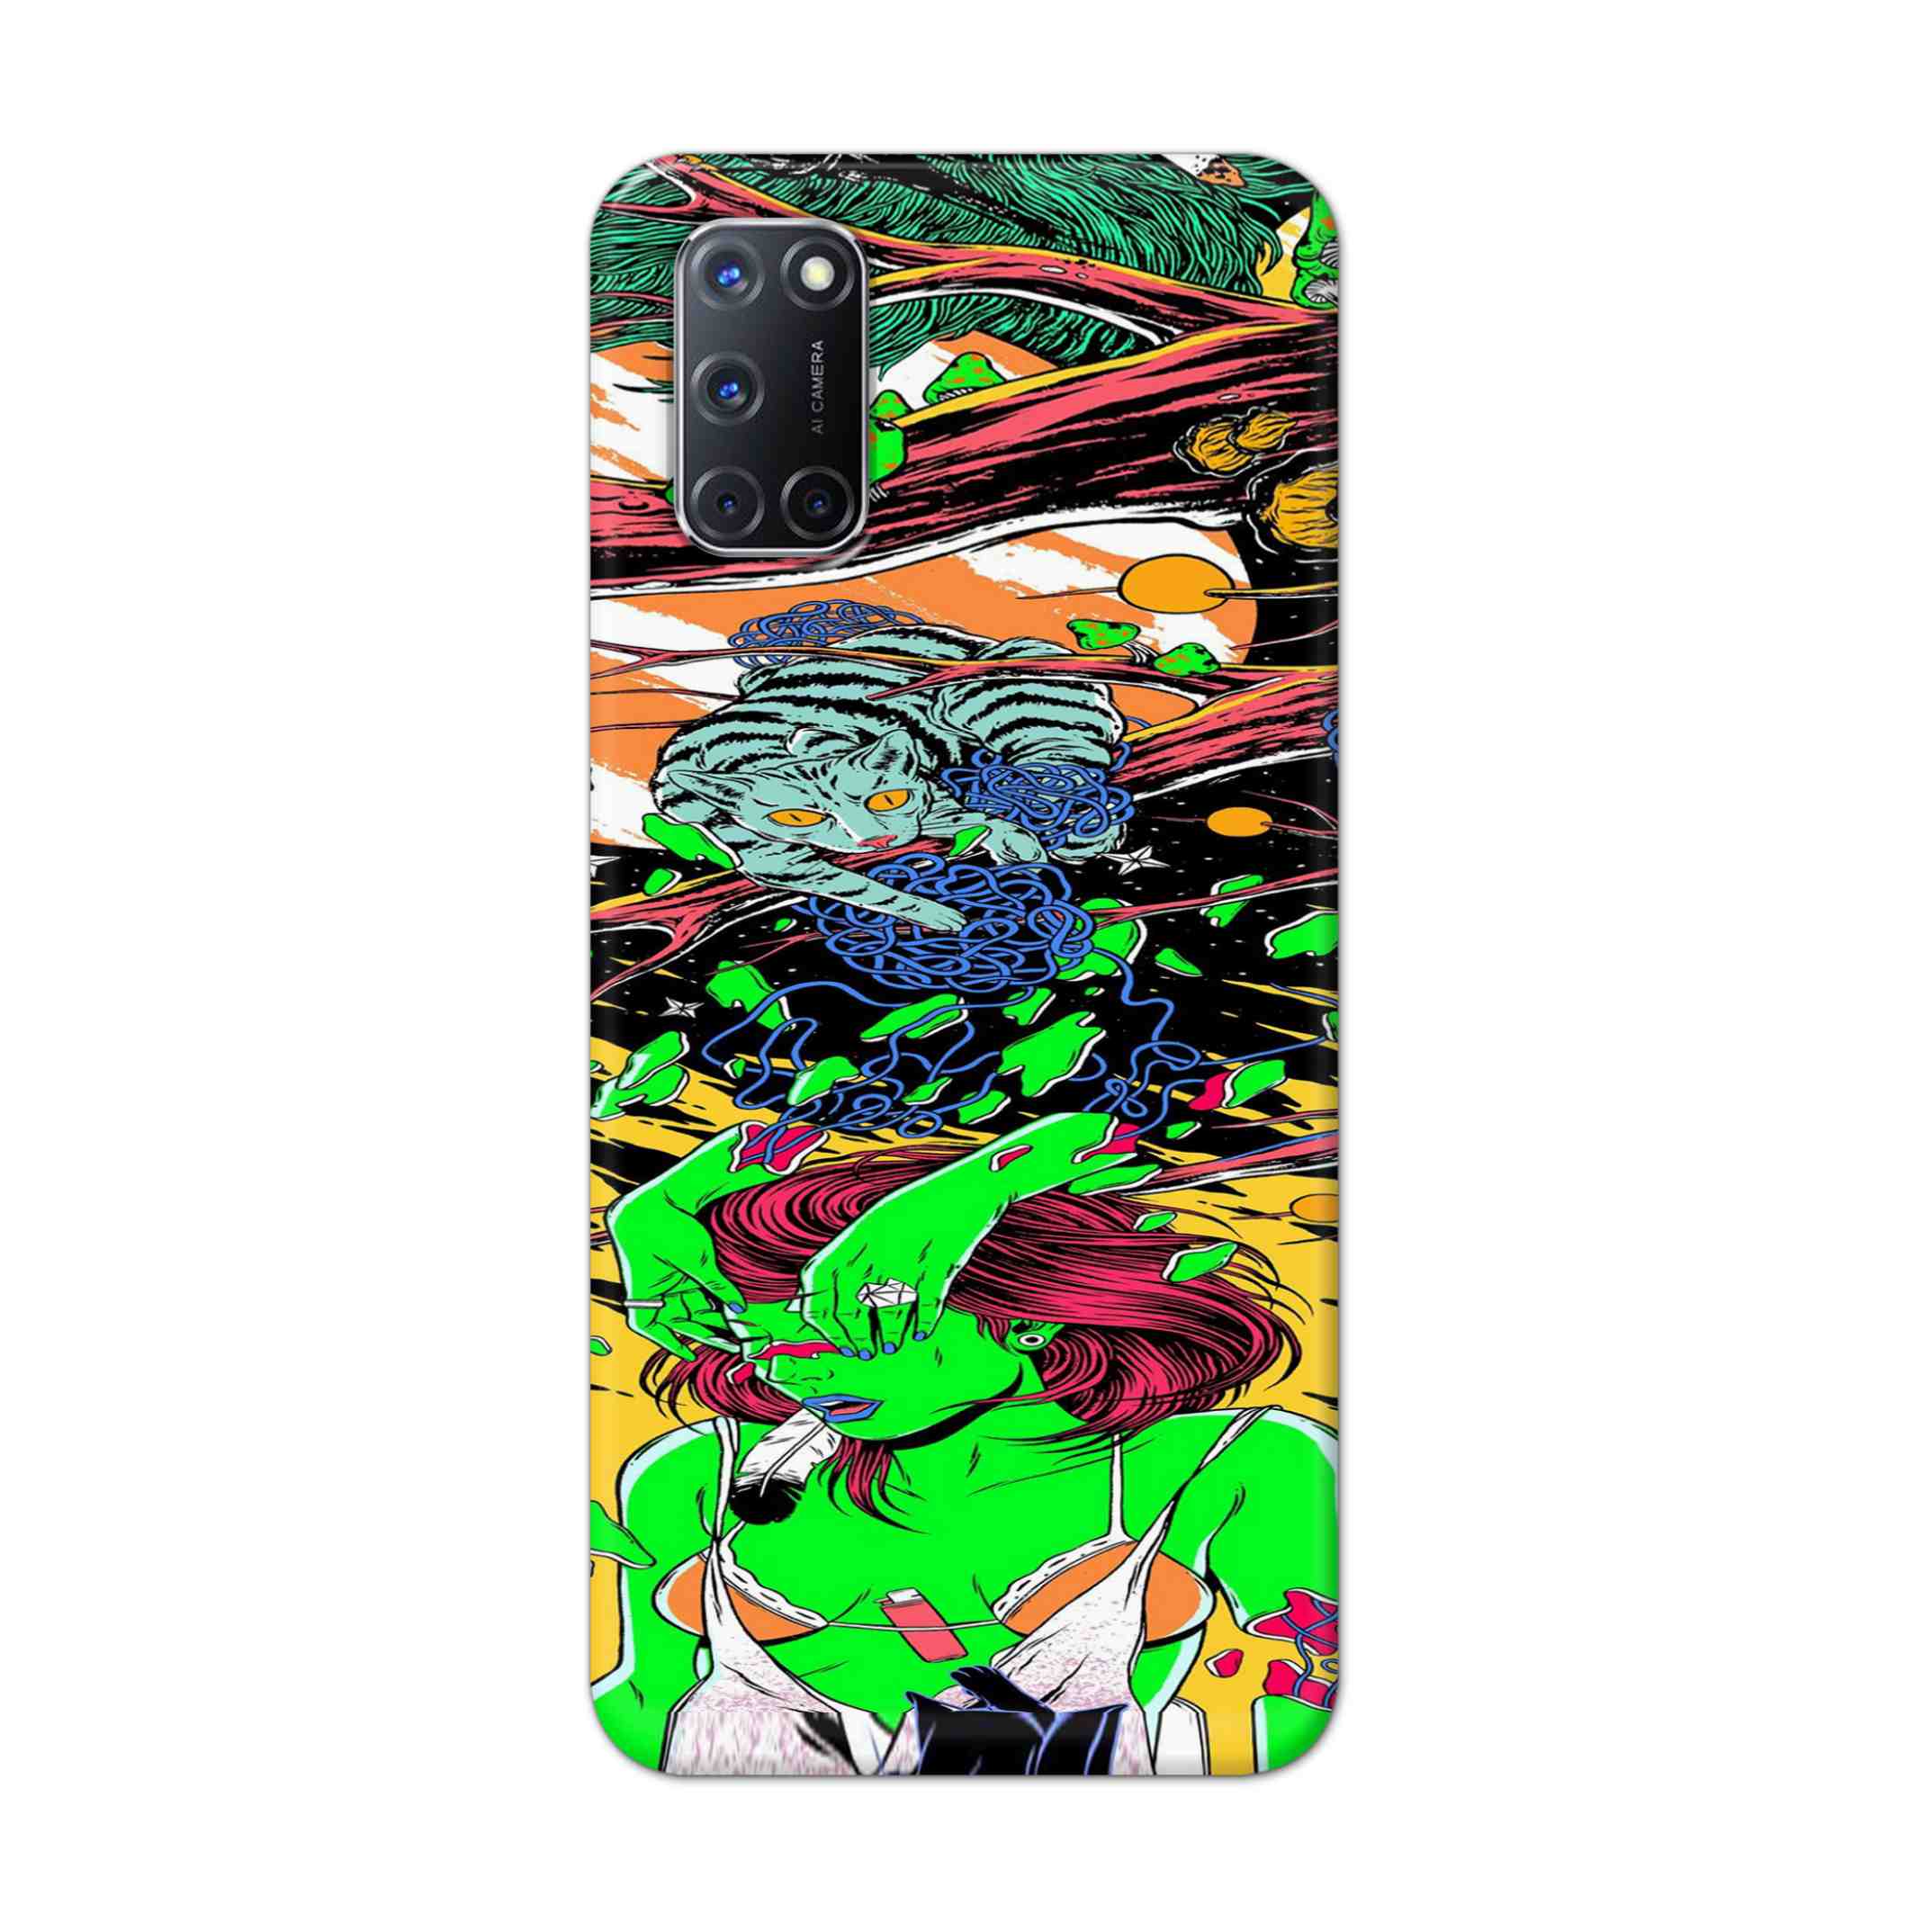 Buy Green Girl Art Hard Back Mobile Phone Case Cover For Oppo A52 Online